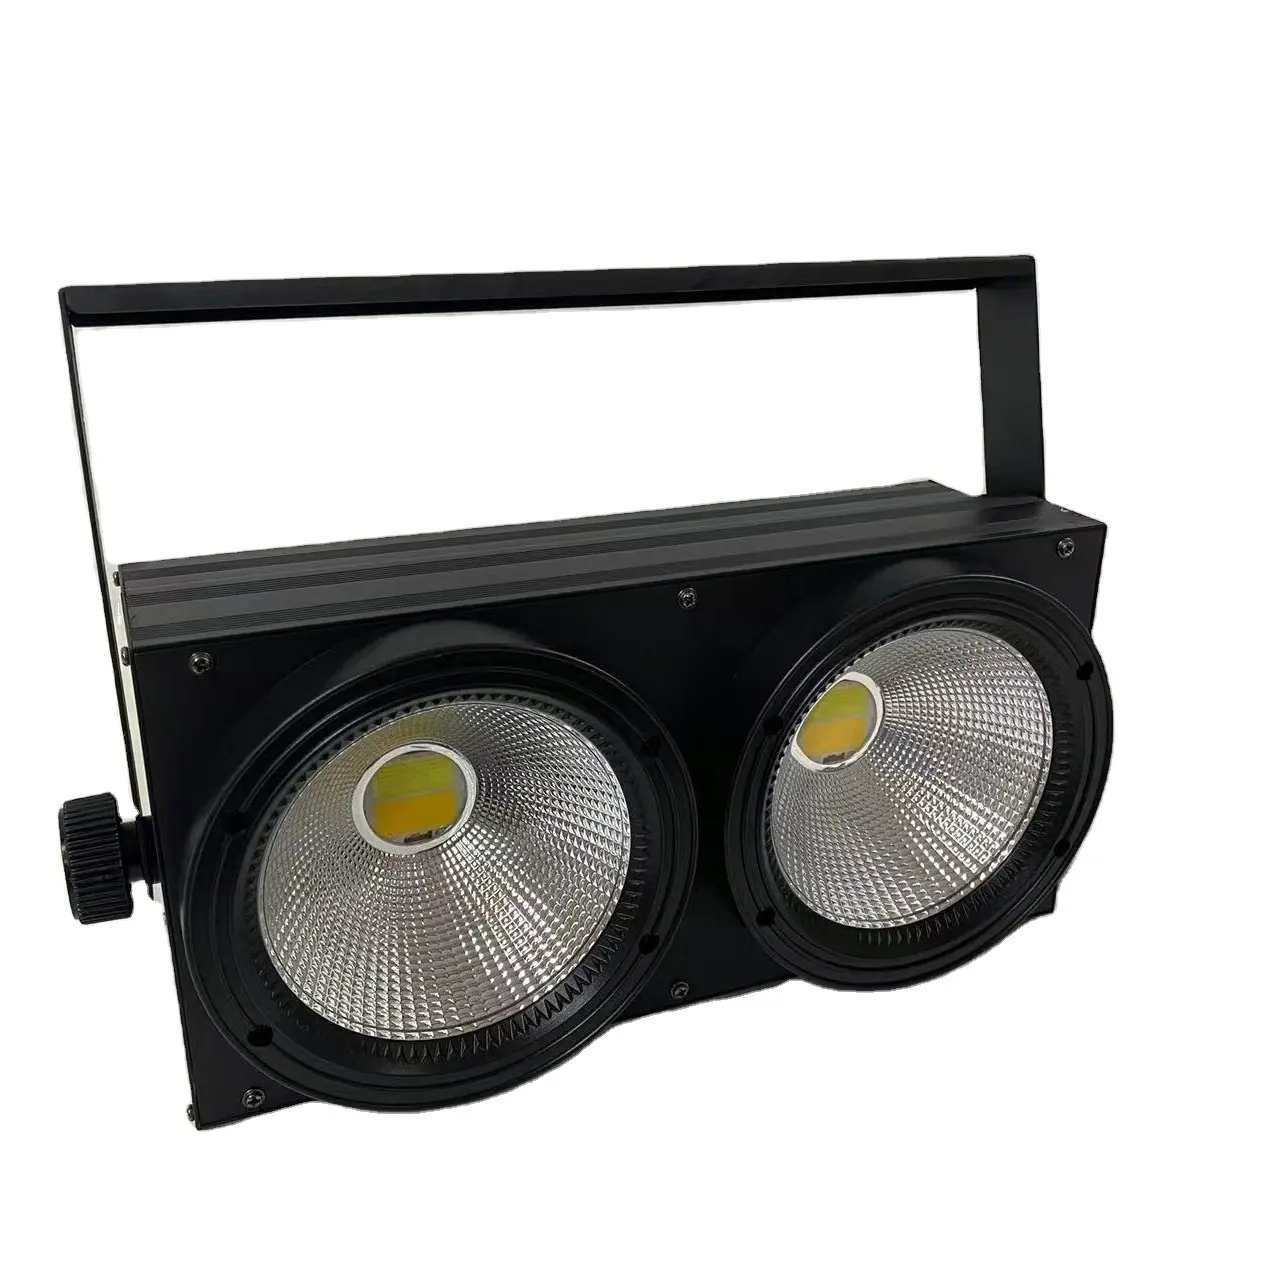 LED COB 2 gözler 2x100W kör aydınlatma DMX sahne aydınlatma etkisi DMX denetleyici kulübü gösterisi gece DJ disko sahne aydınlatma